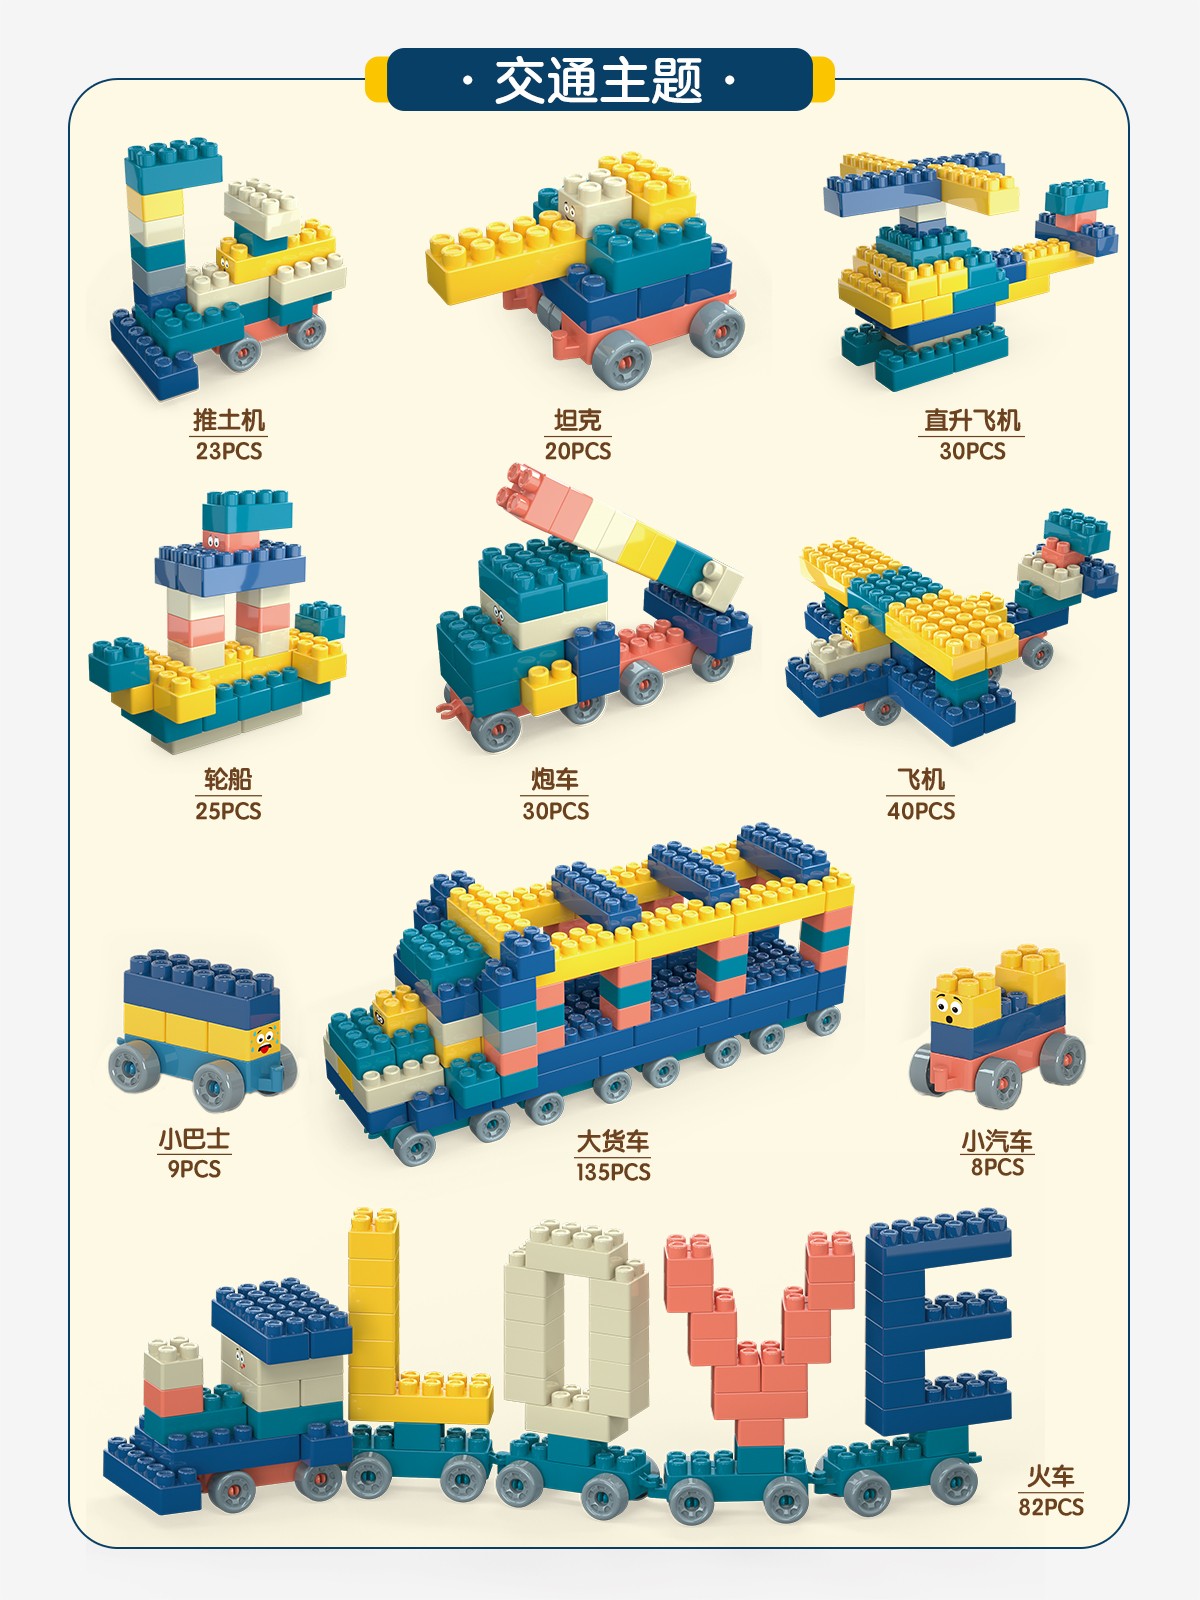 纳仕达  X儿童积木游戏桌趣味颗粒积木幼儿园塑料拼装玩具 迷你积木游戏桌+60粒